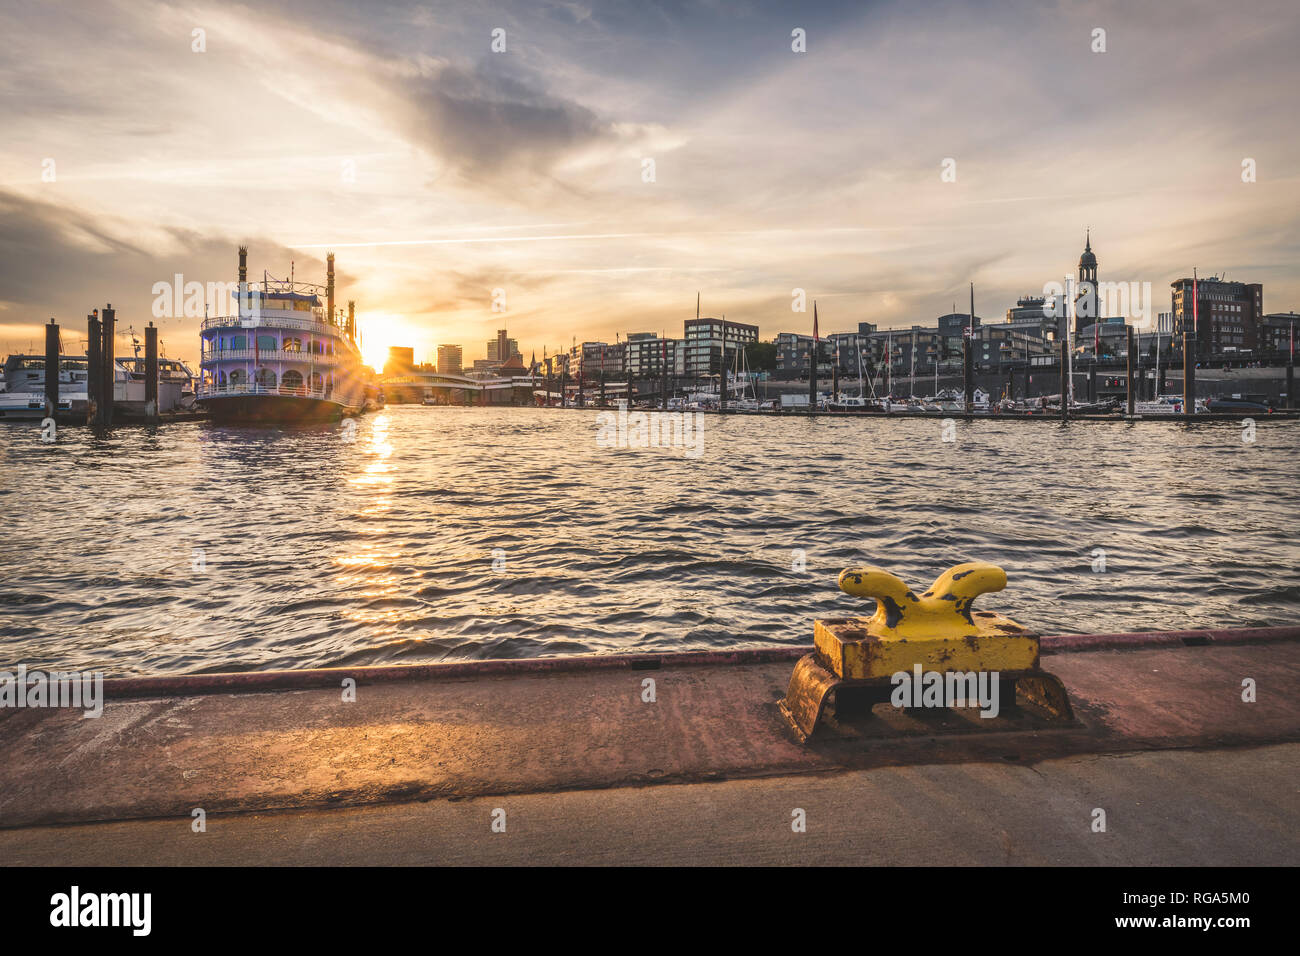 Alemania, Hamburgo, Hafencity, Sandtorhoeft Sporthafen, vista a la ciudad al amanecer. Foto de stock